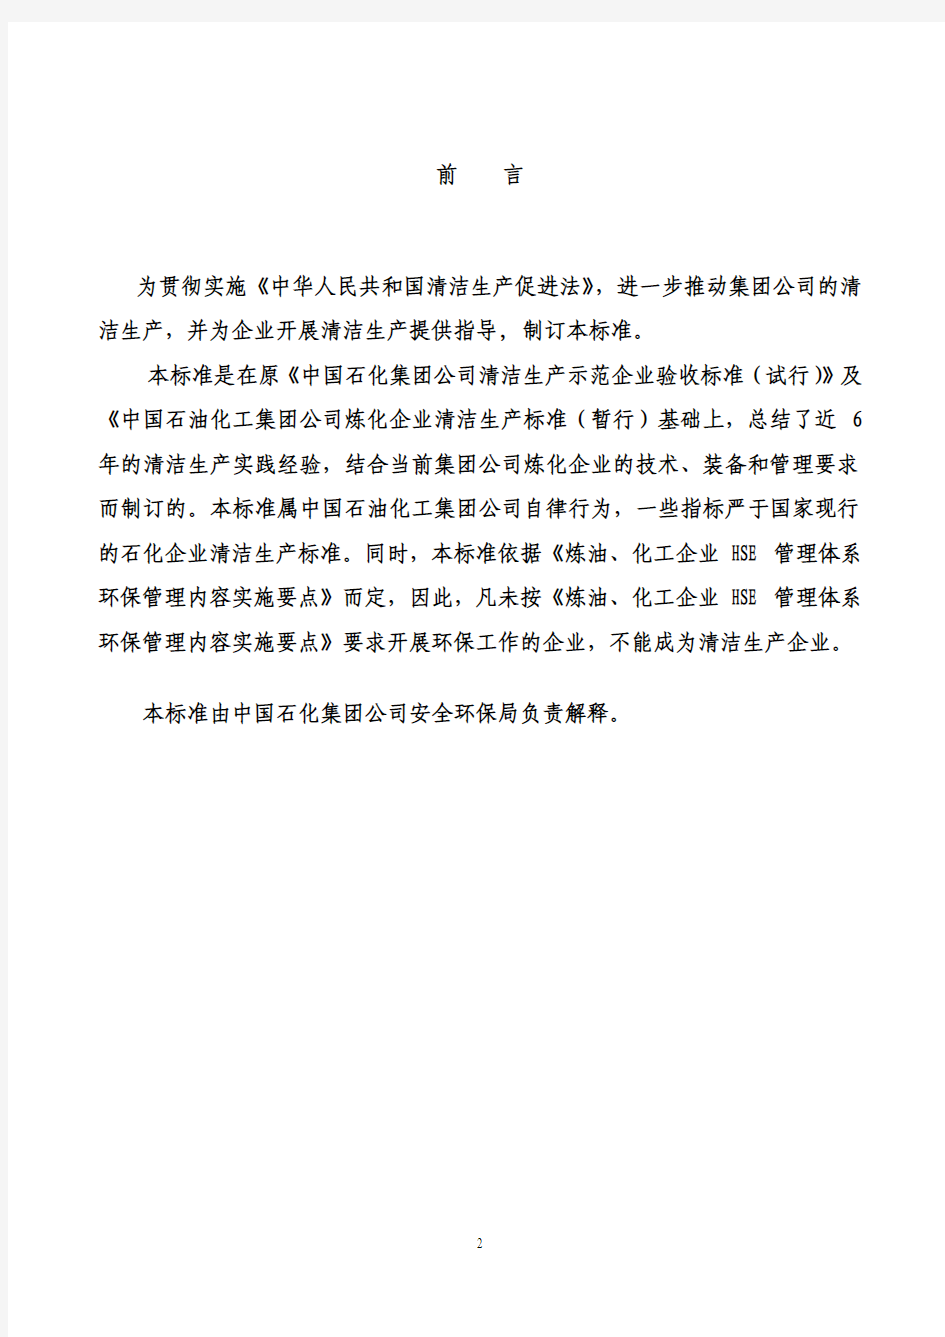 中国石化炼化企业清洁生产标准(2008年版)